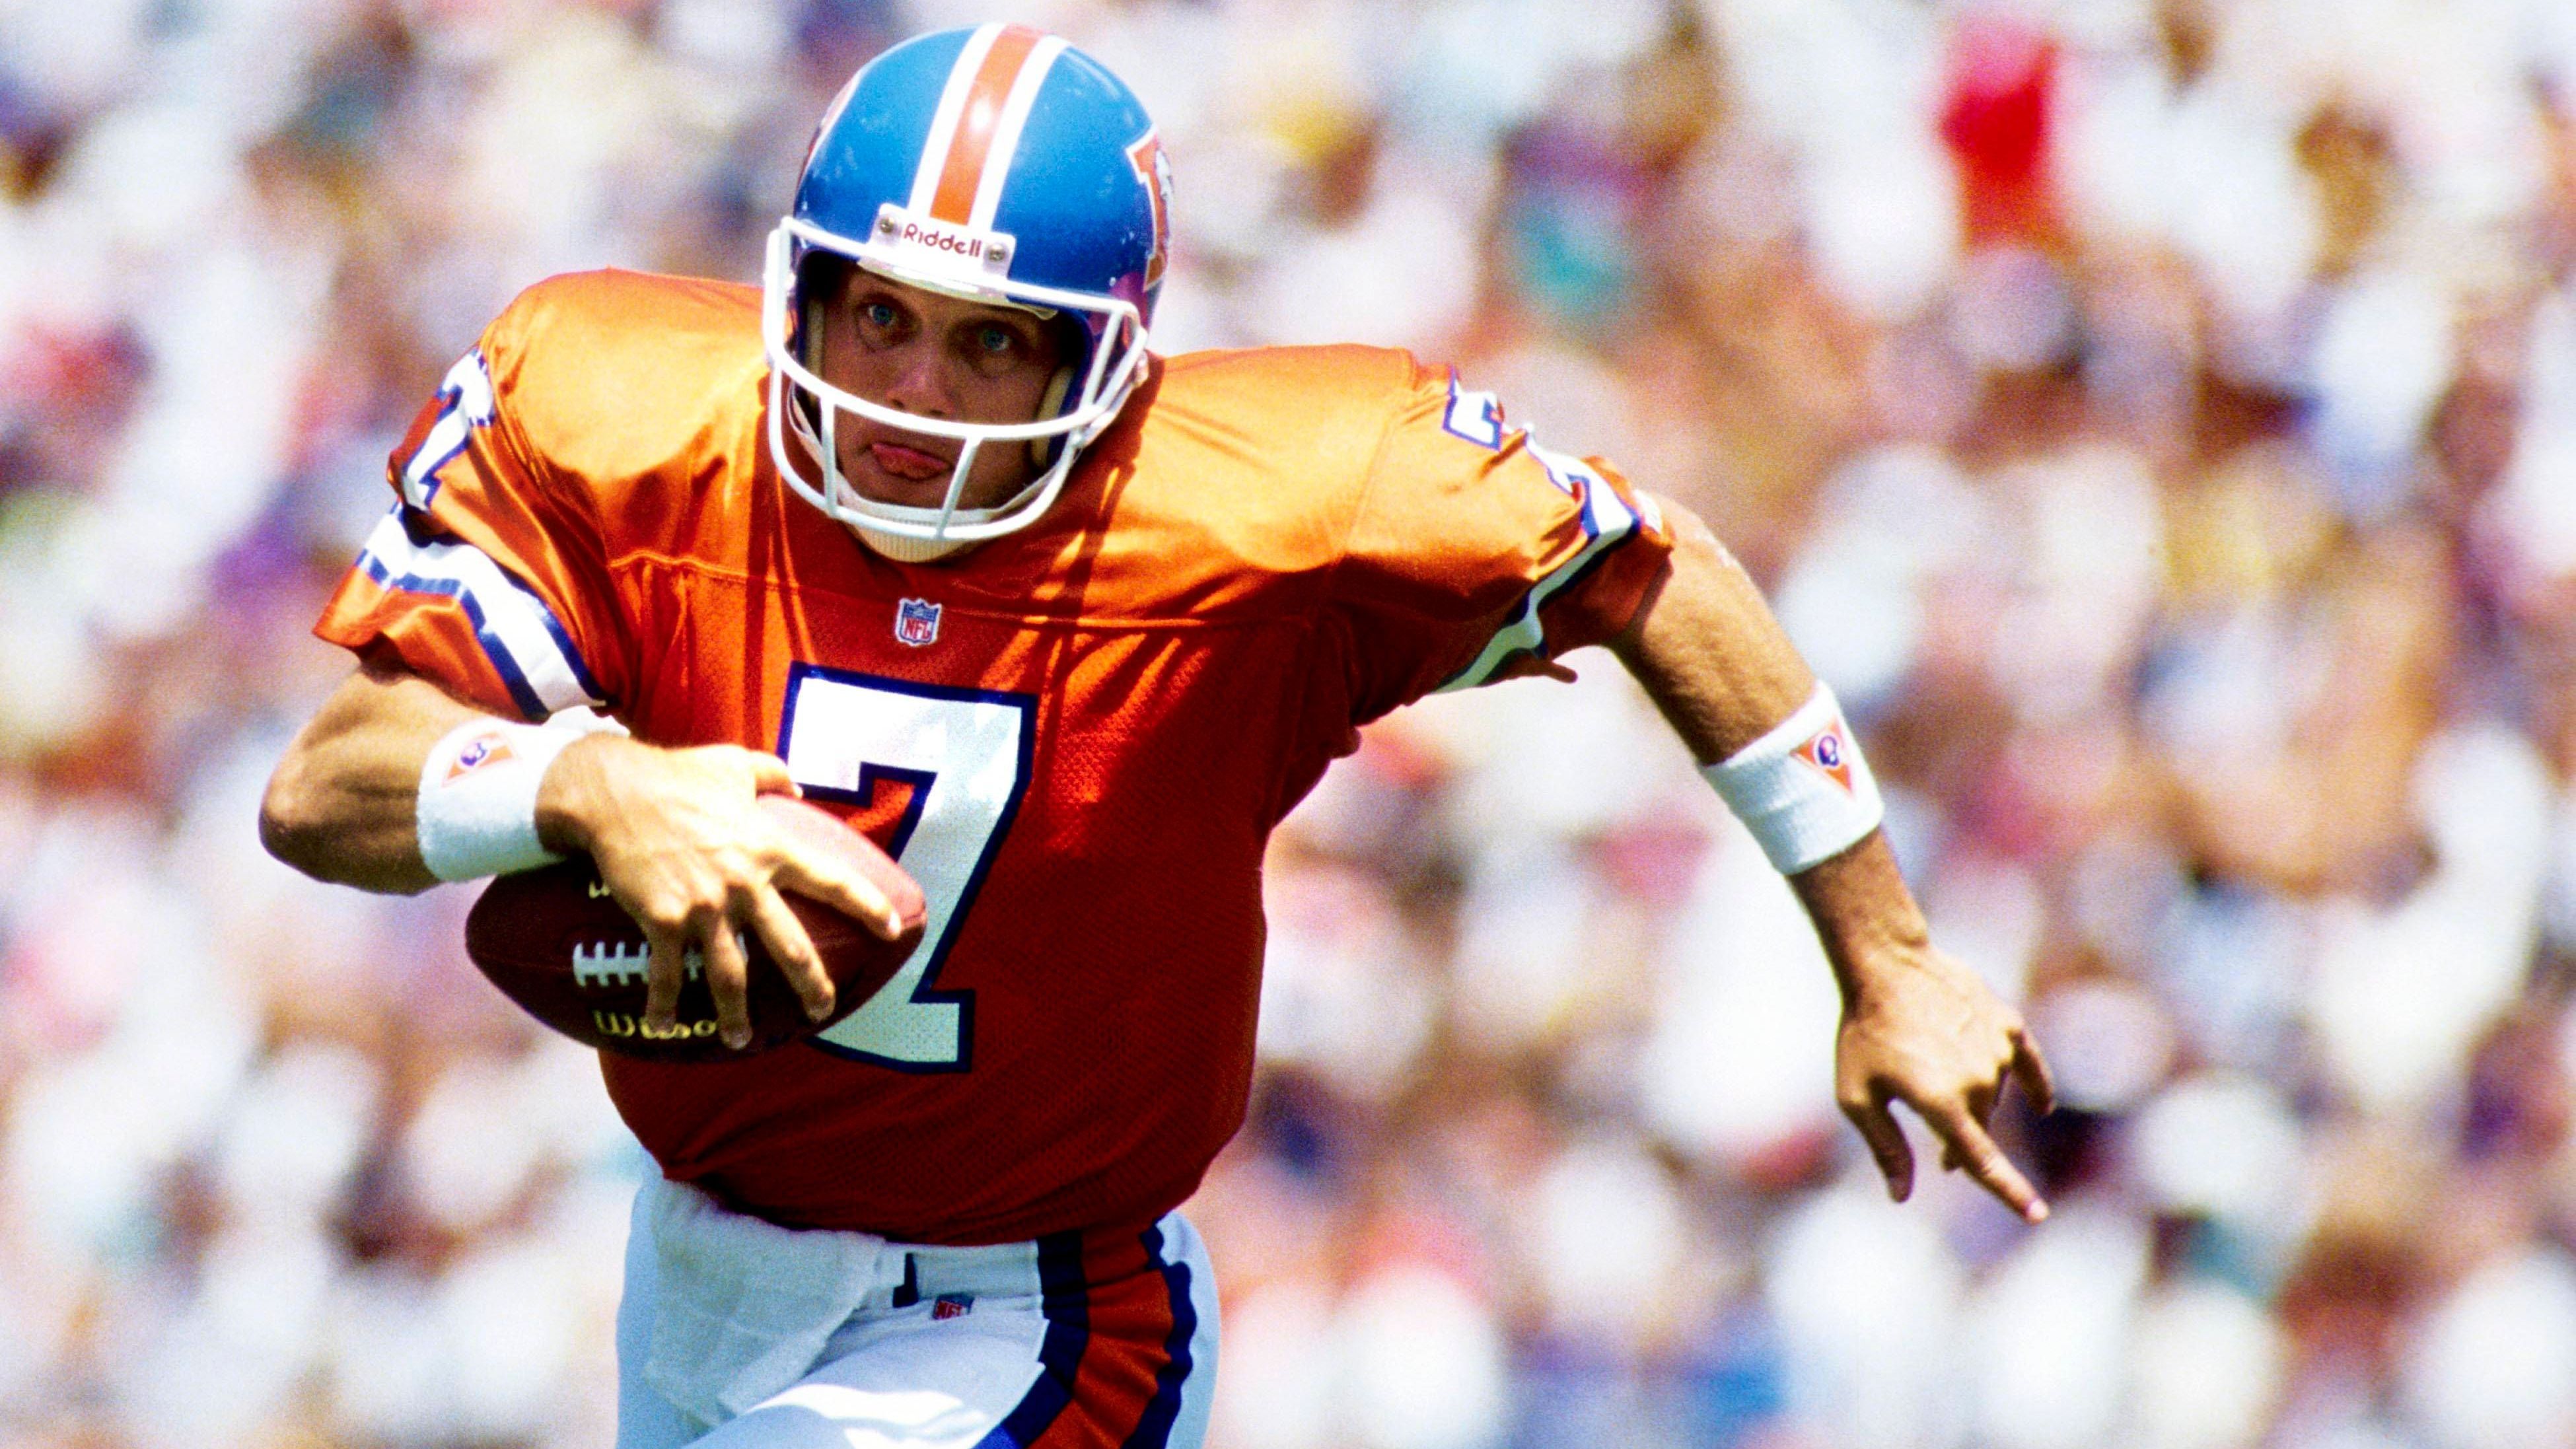 <strong>John Elway - 1983</strong><br>Position: Quarterback<br>Draft-Team: Baltimore Colts<br>Erfolge: 9x Pro Bowl, NFL MVP, Super Bowl MVP, 2x Super Bowl Champion, Pro Football Hall of Fame<br>Karriereende: 1998